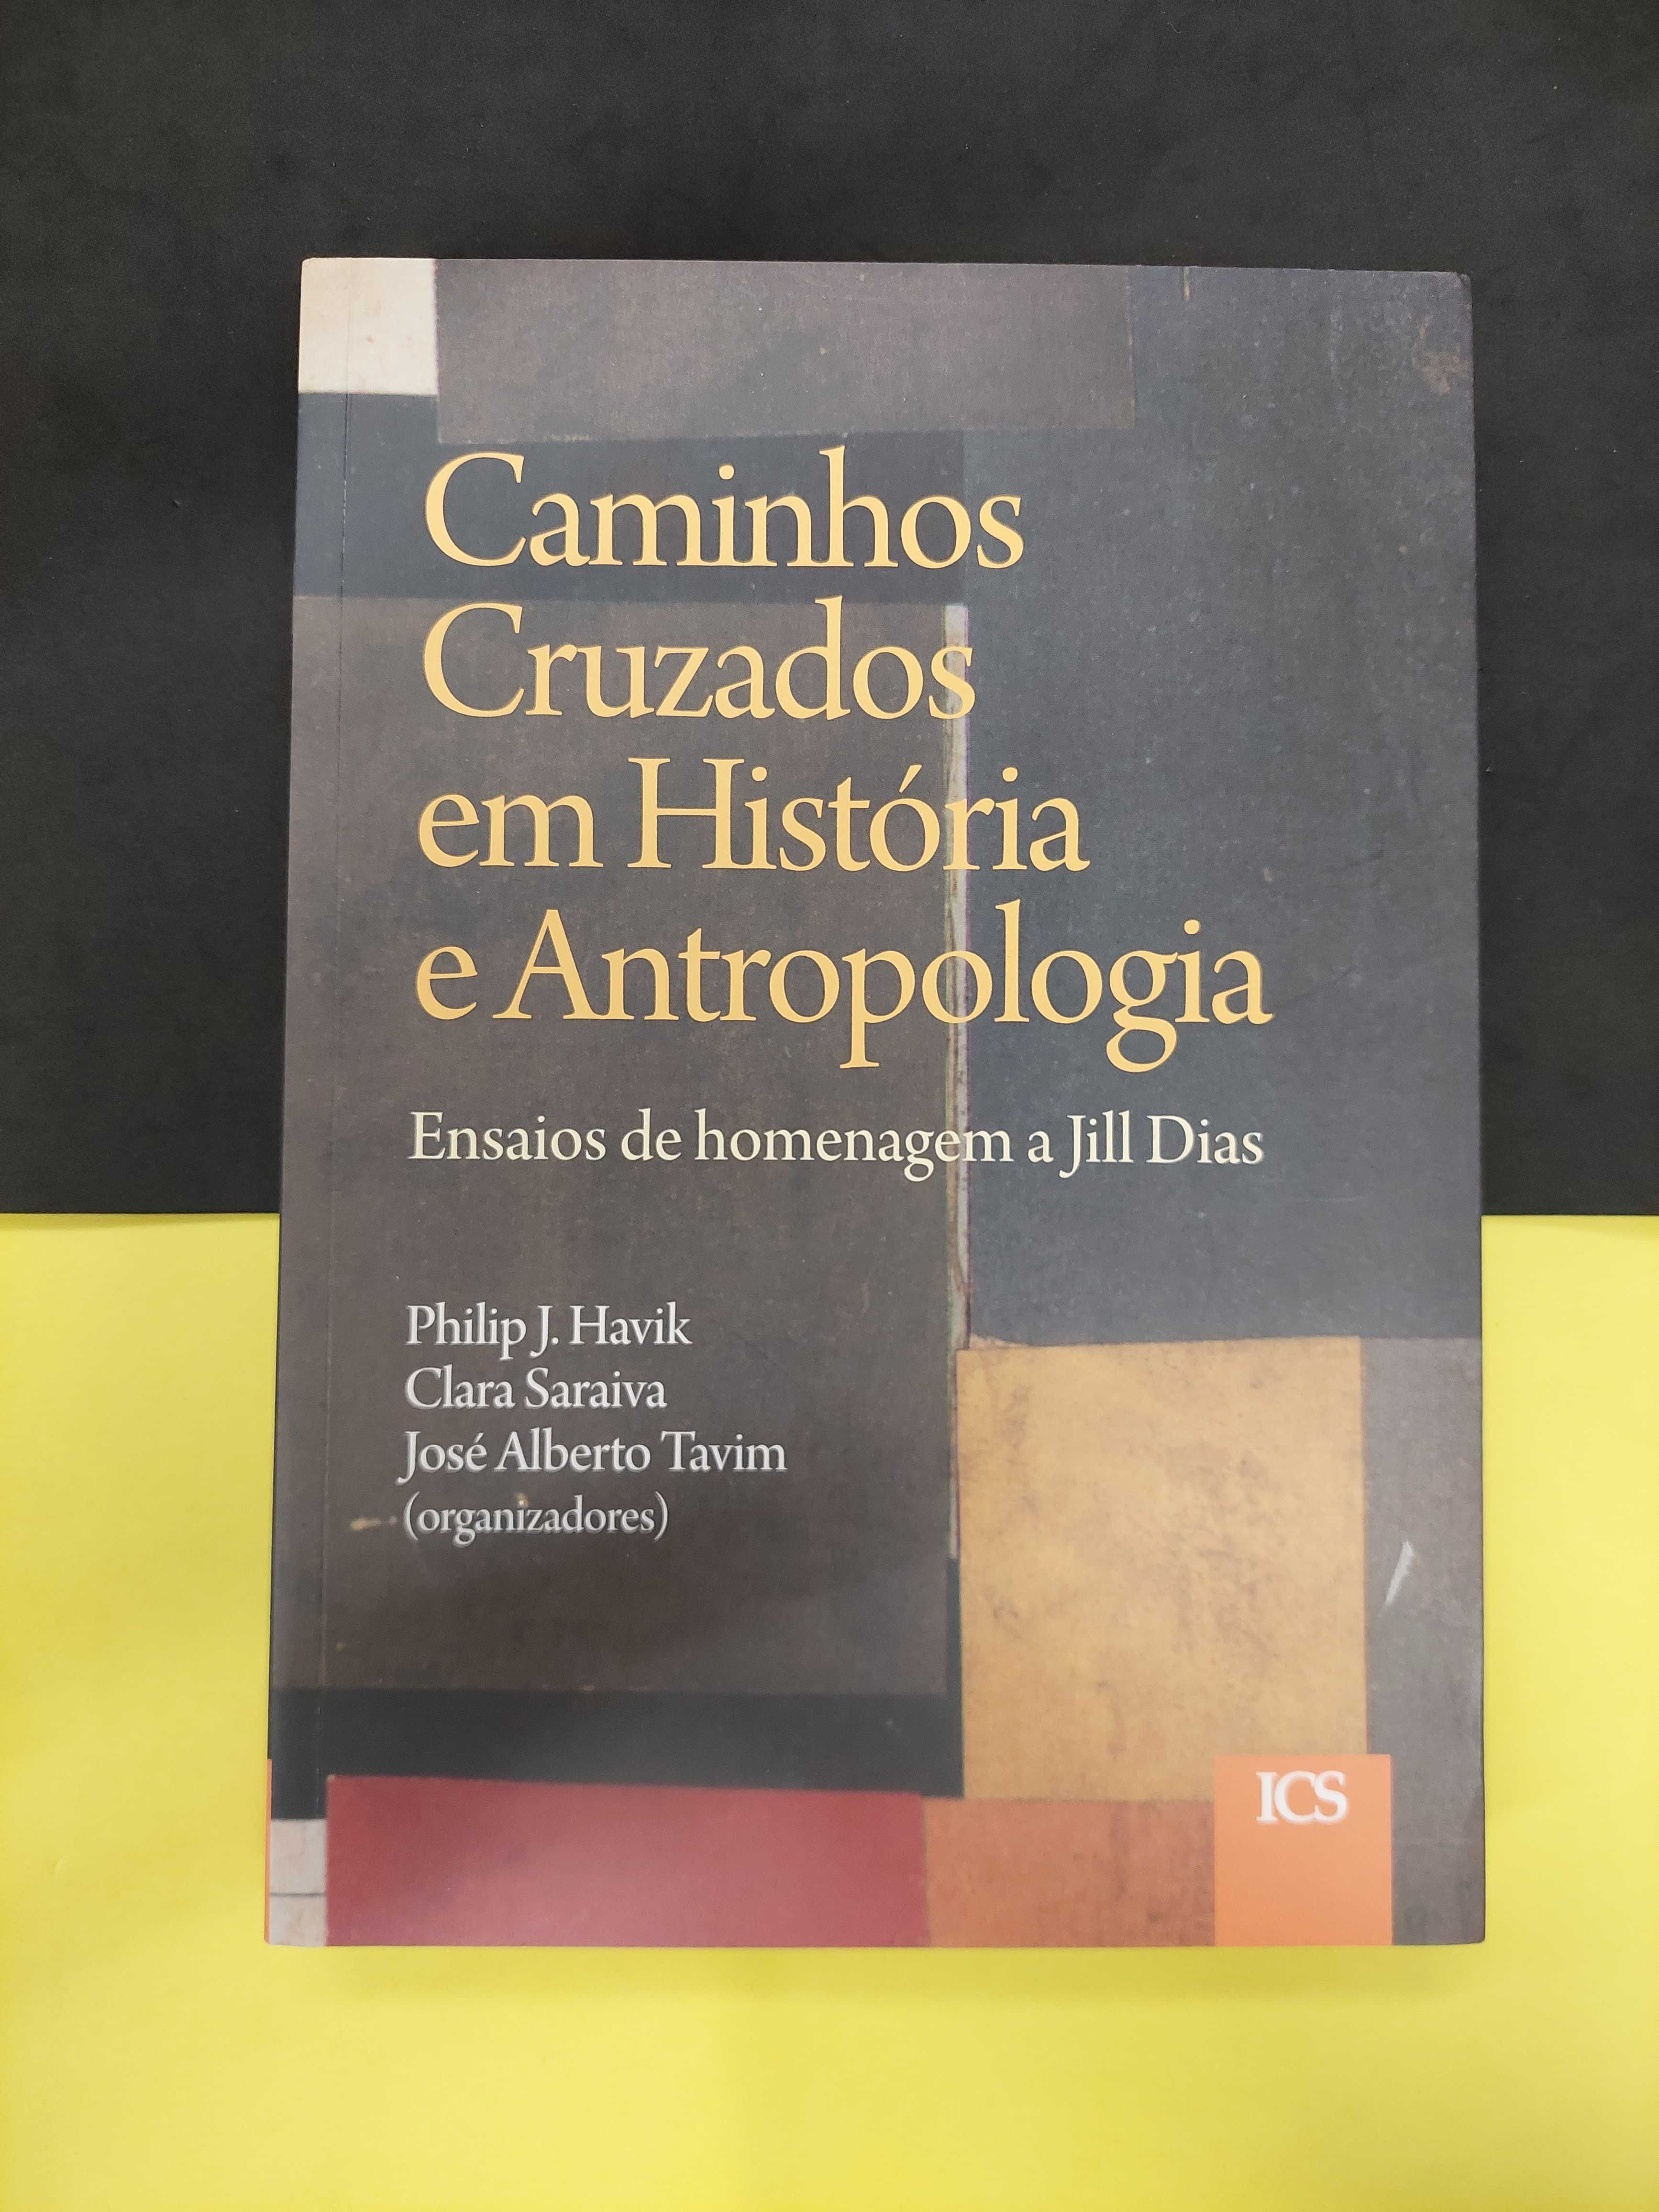 Caminhos cruzados em História e Antropologia.